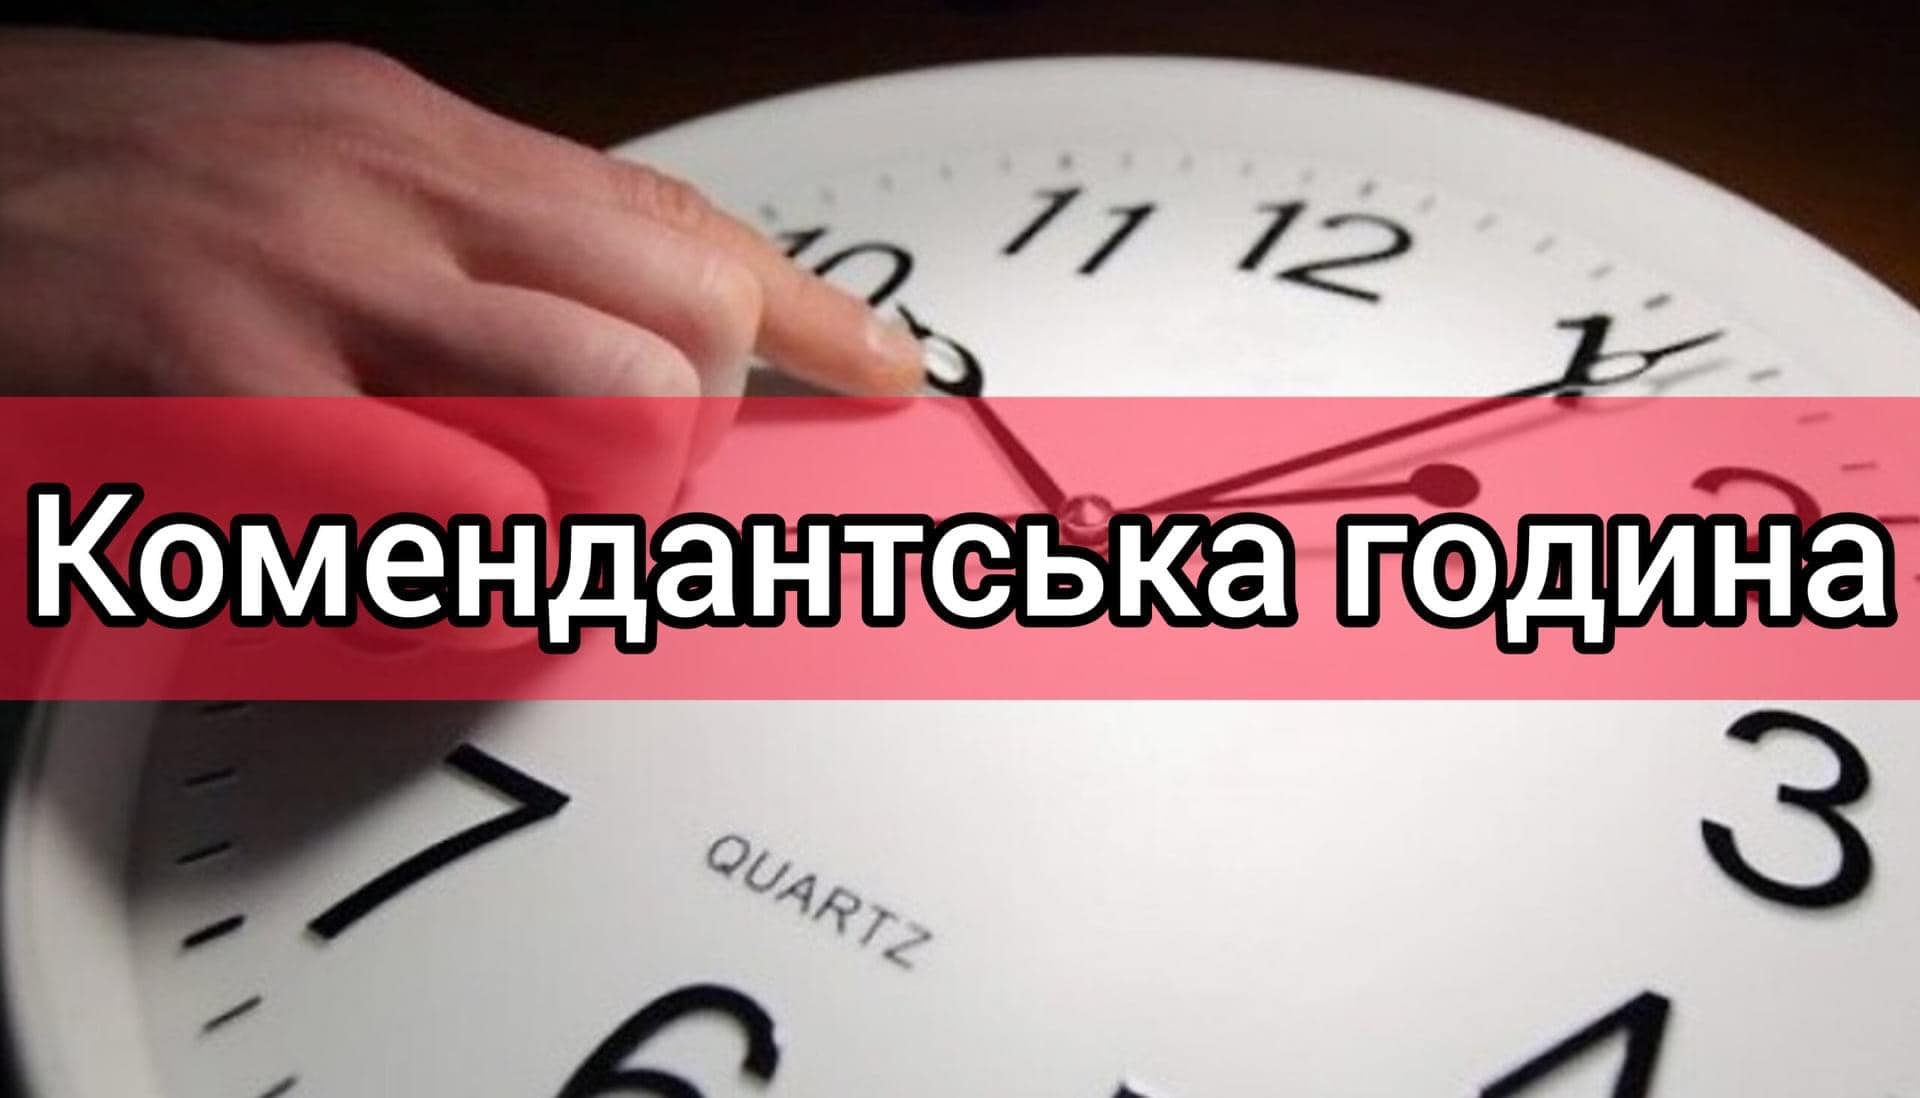 З 1 грудня комендантська година на Миколаївщині, окрім декількох громад, буде з 00:00 до 05:00 (ДОКУМЕНТ) 35